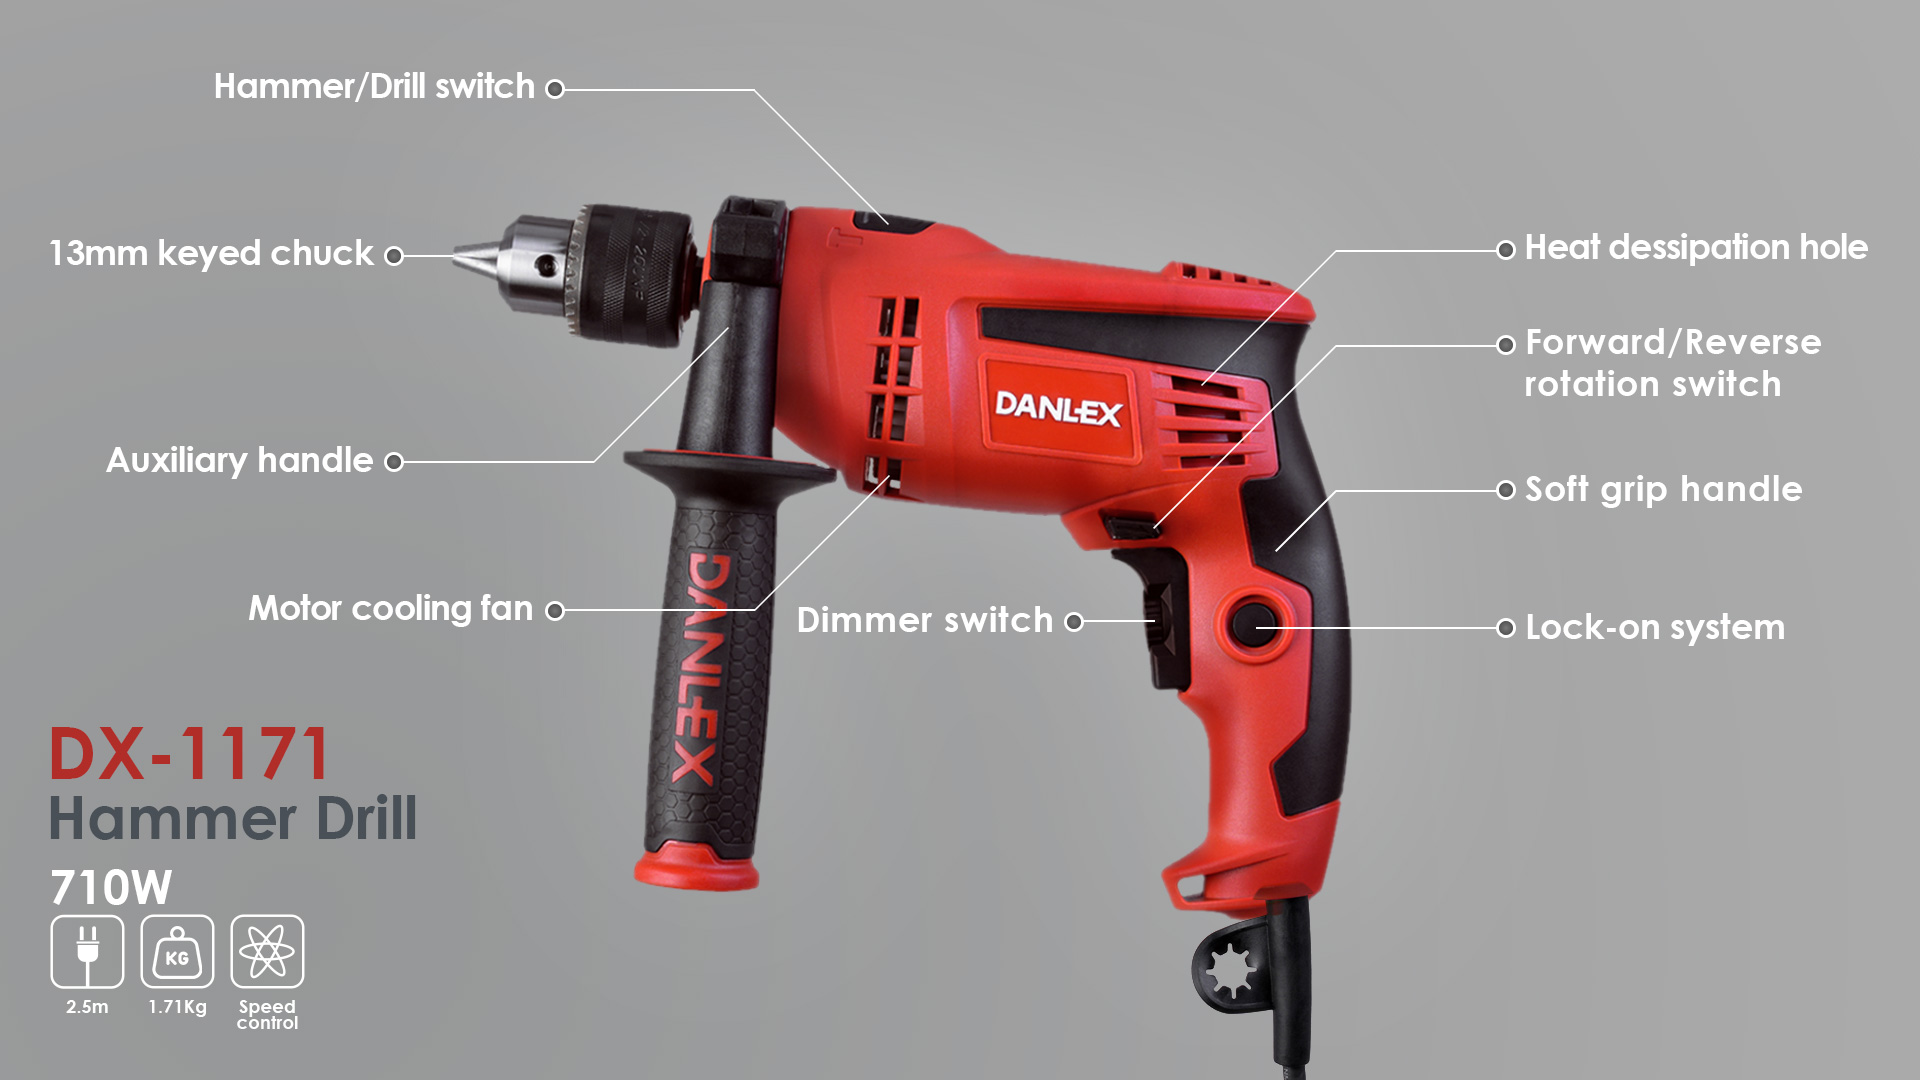 Danlex dx-1171 hammer drill 710w information